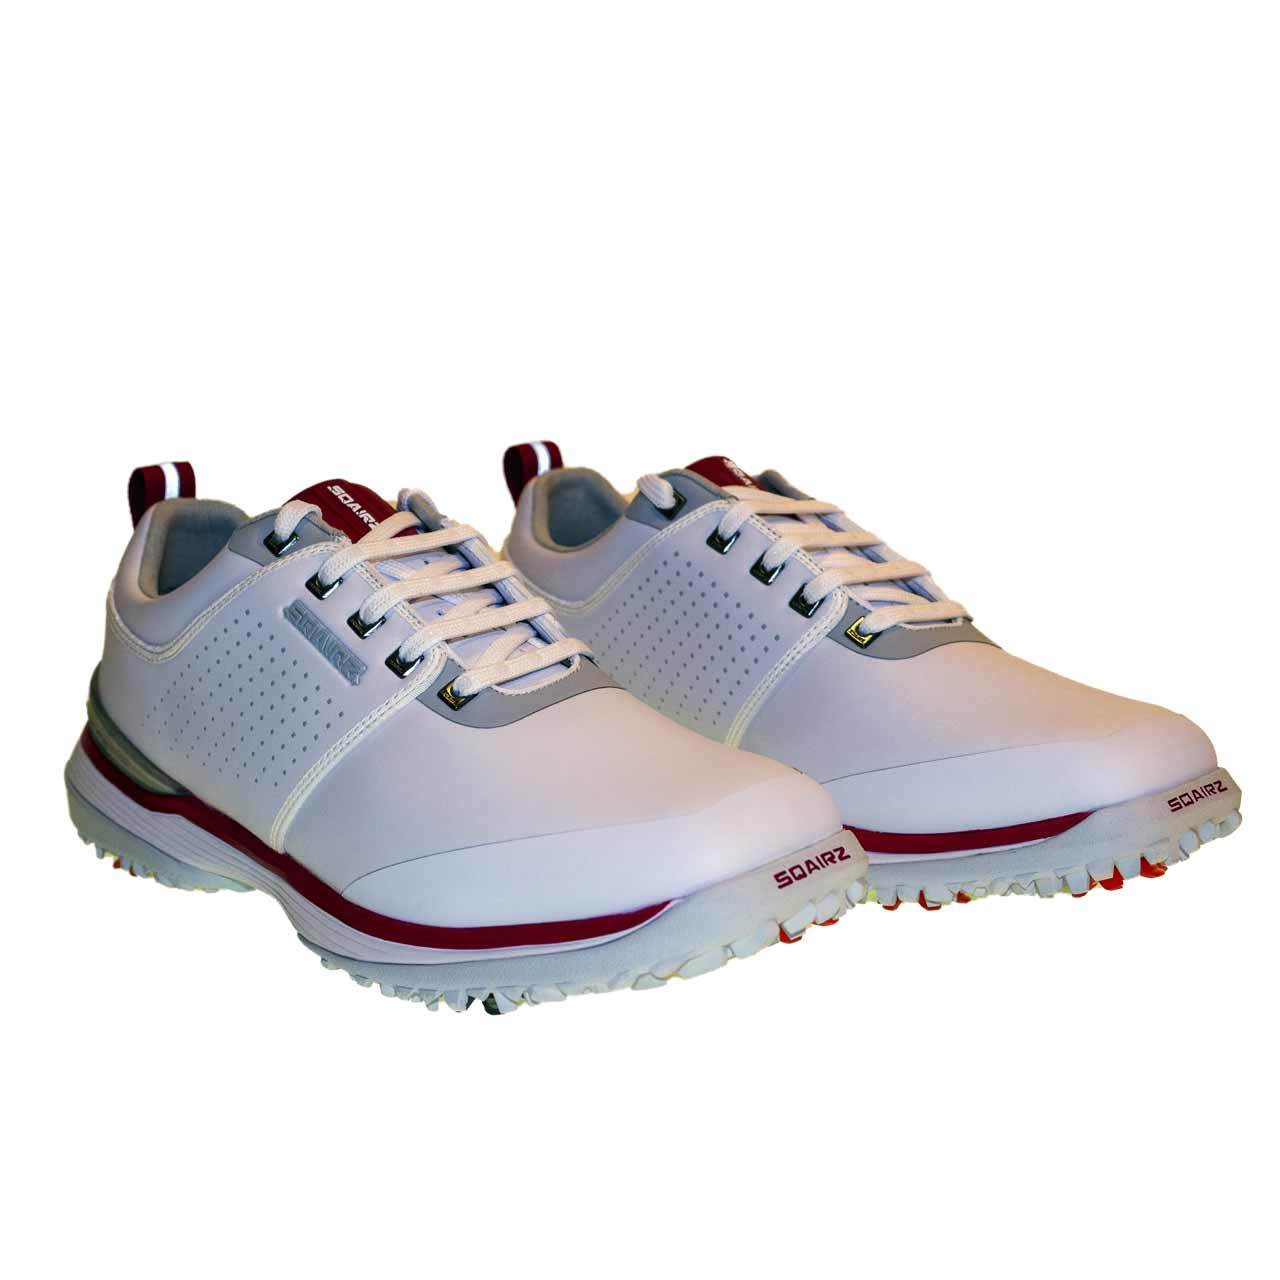  SQAIRZ Arrow - Zapatos de golf clásicos para hombre